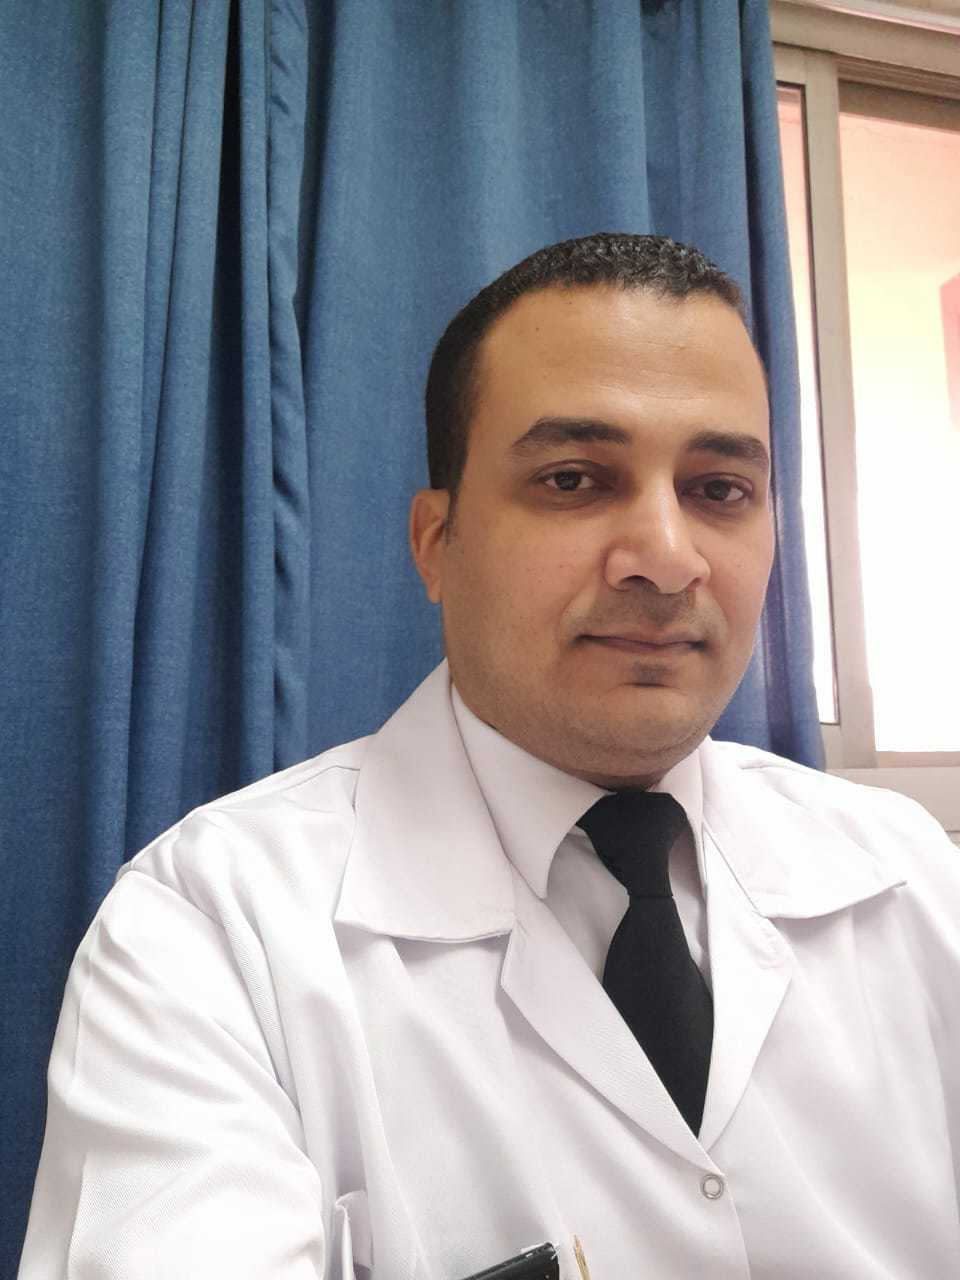 Dr. Deaa Sedek